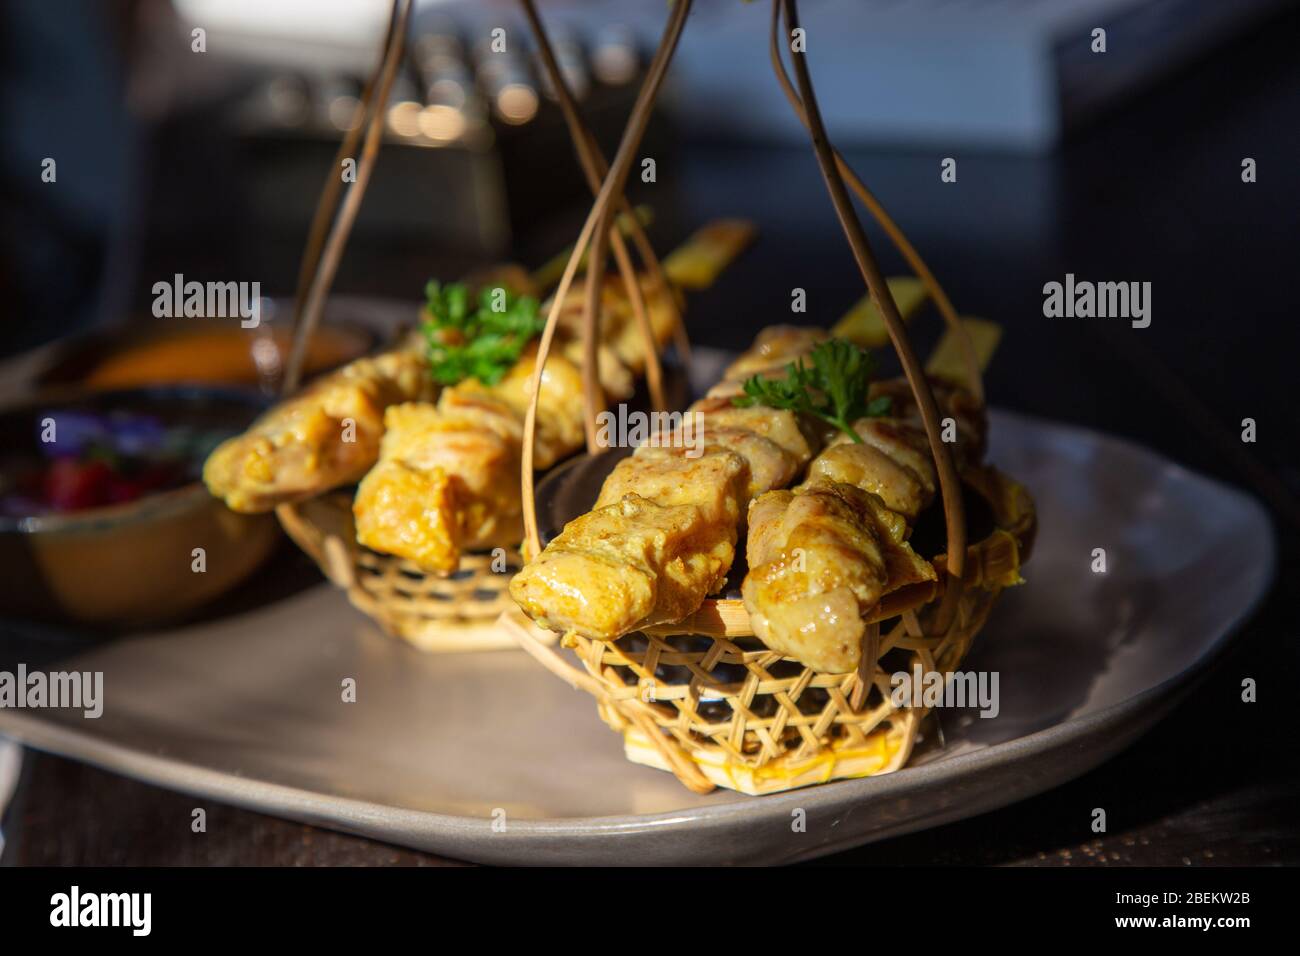 Brochettes de poulet ou kebab sur une plaque en céramique noire avec des plats d'accompagnement à base de concombres, oignons rouges, poivrons et sauce thaï. Banque D'Images